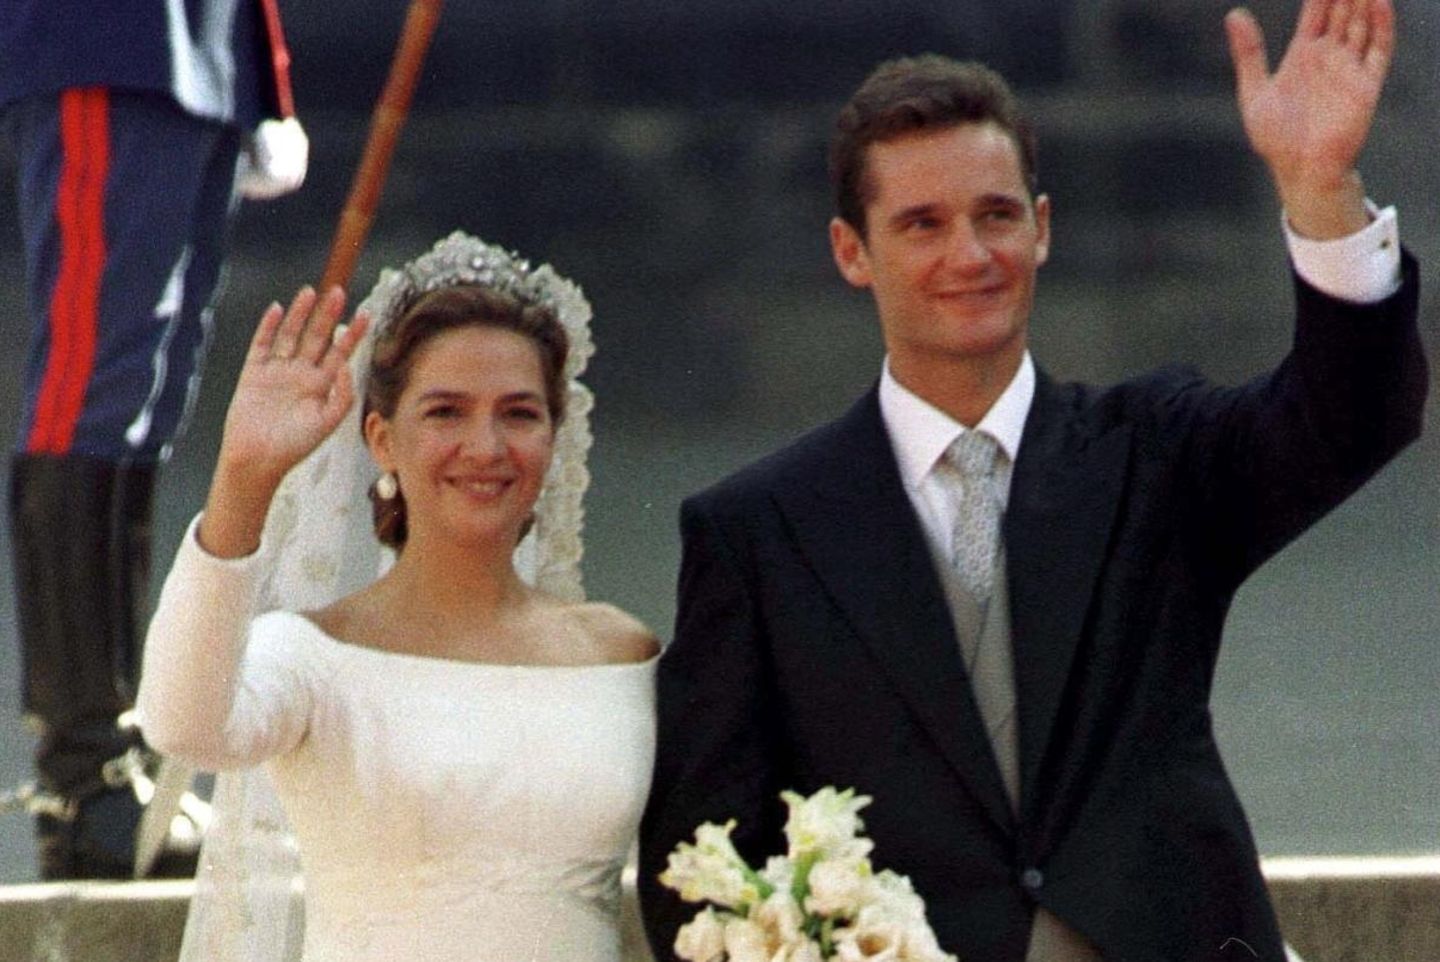 Die spektakuläre Hochzeit von Prinzessin Cristina und Inaki Urdangarin fand am 4. Oktober 1997 in Barcelona statt.